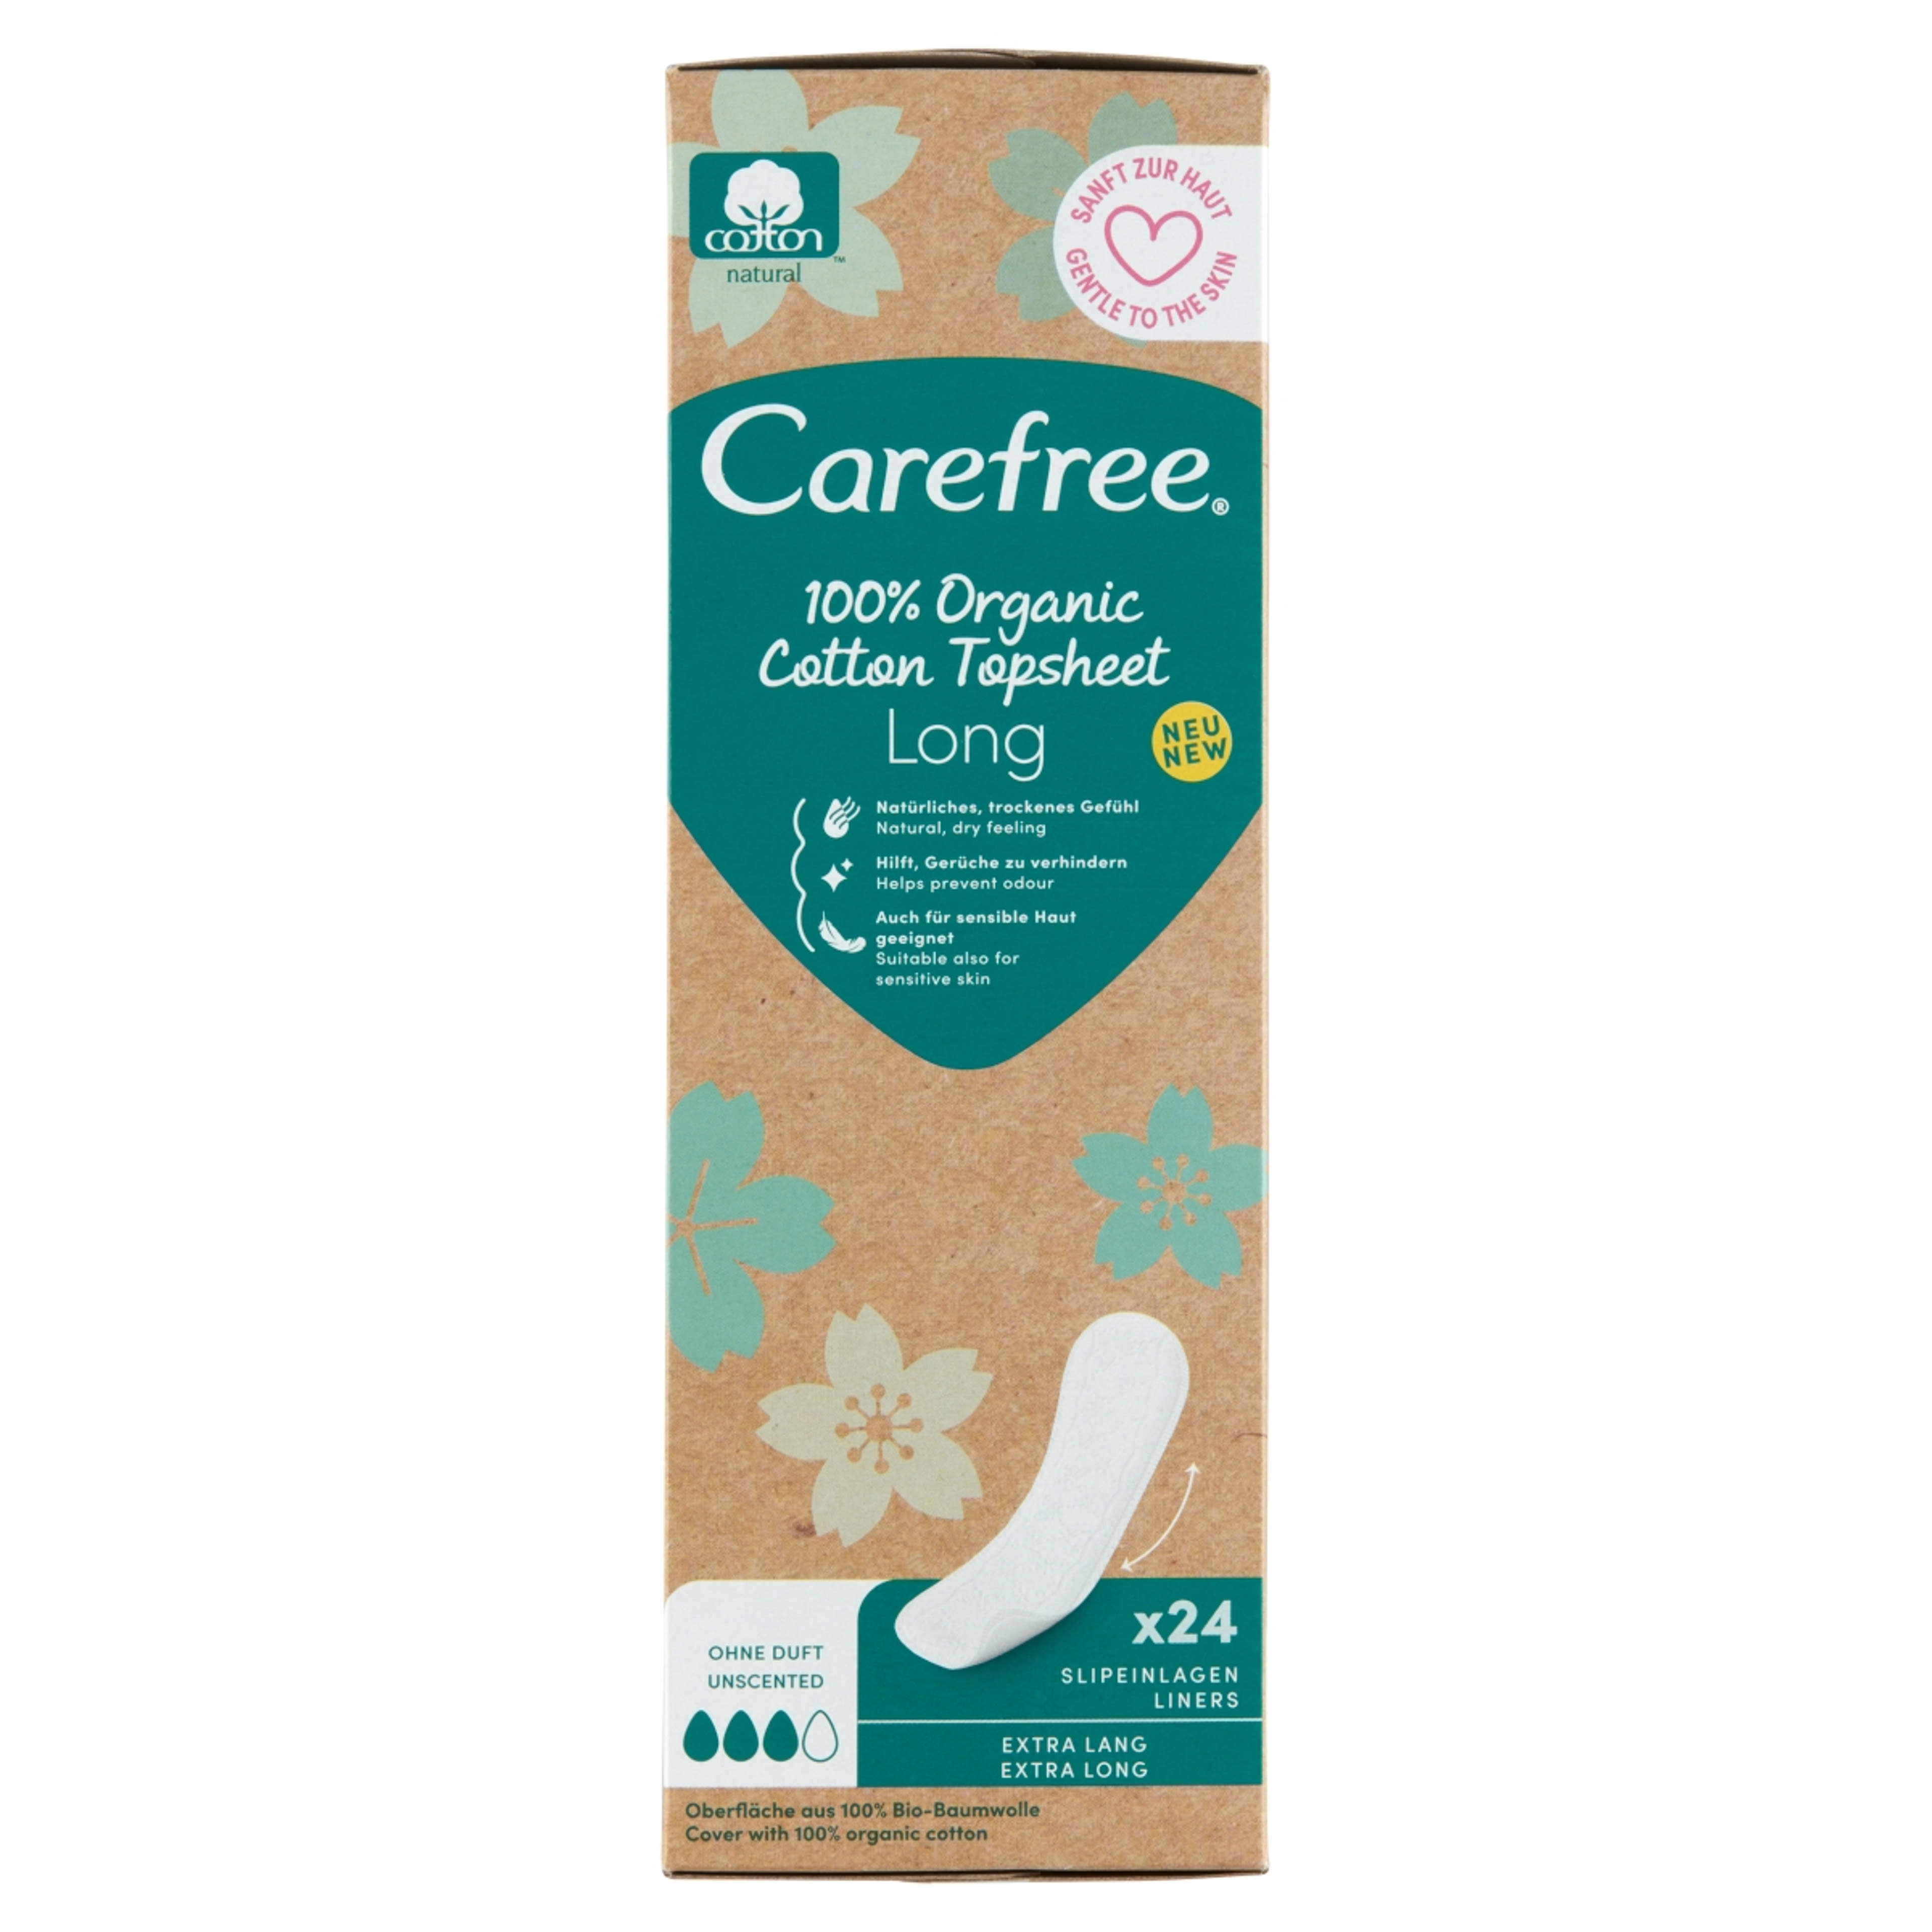 Carefree 100% Organic Cotton Topsheet Long tisztasági betét illatmentes - 24 db-1